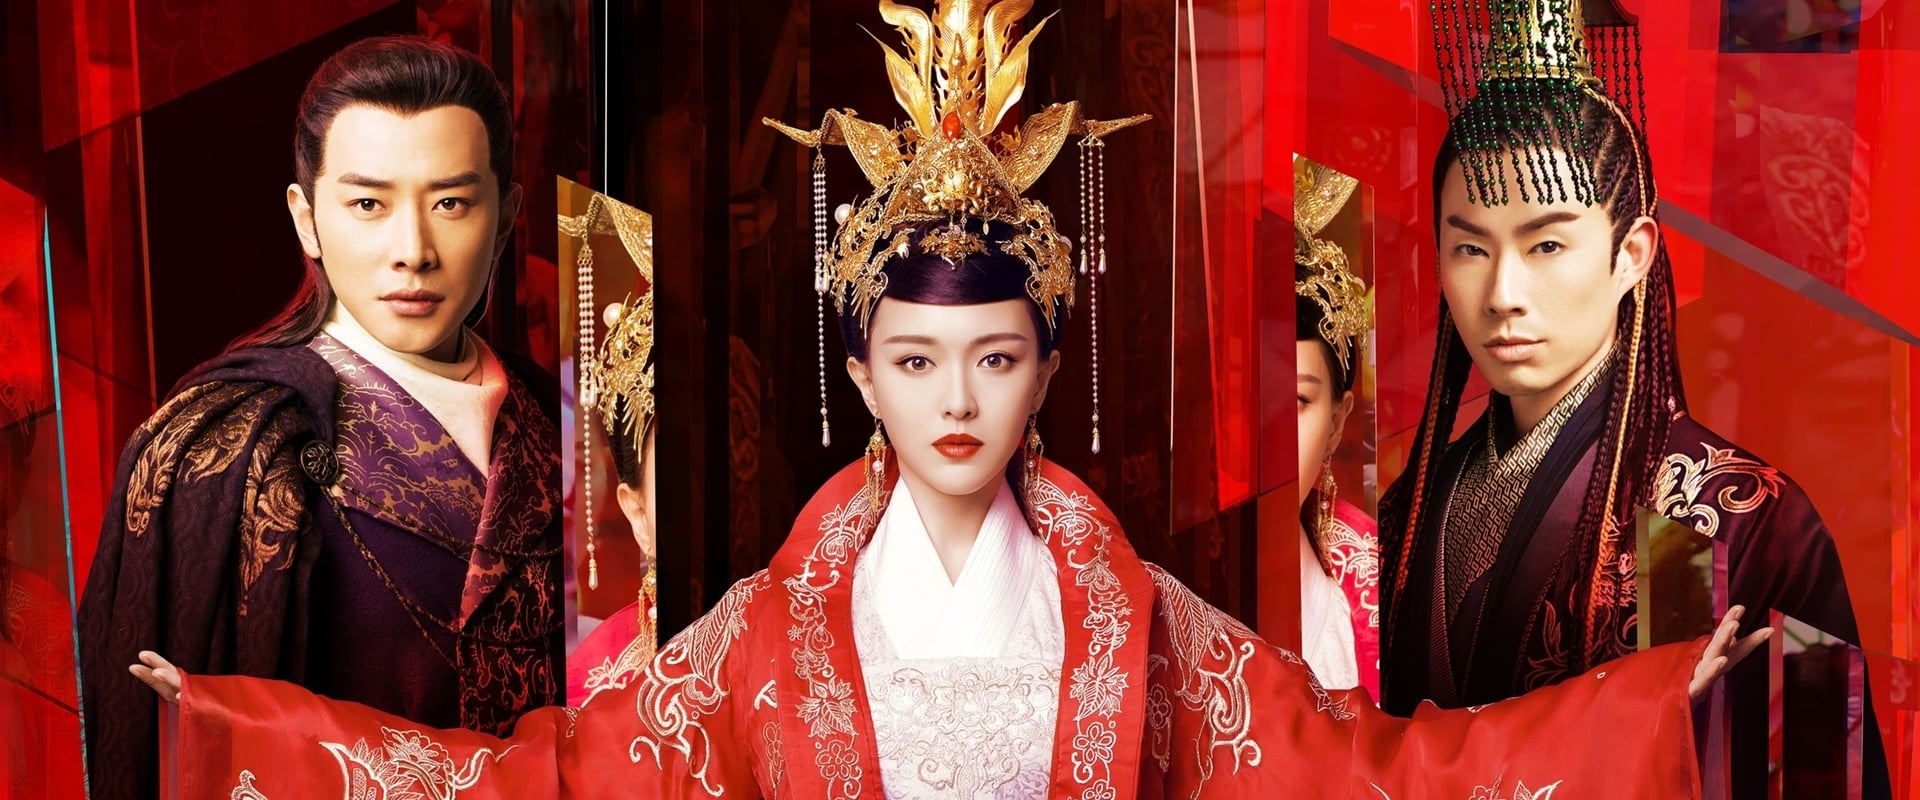 La princesa Weiyoung